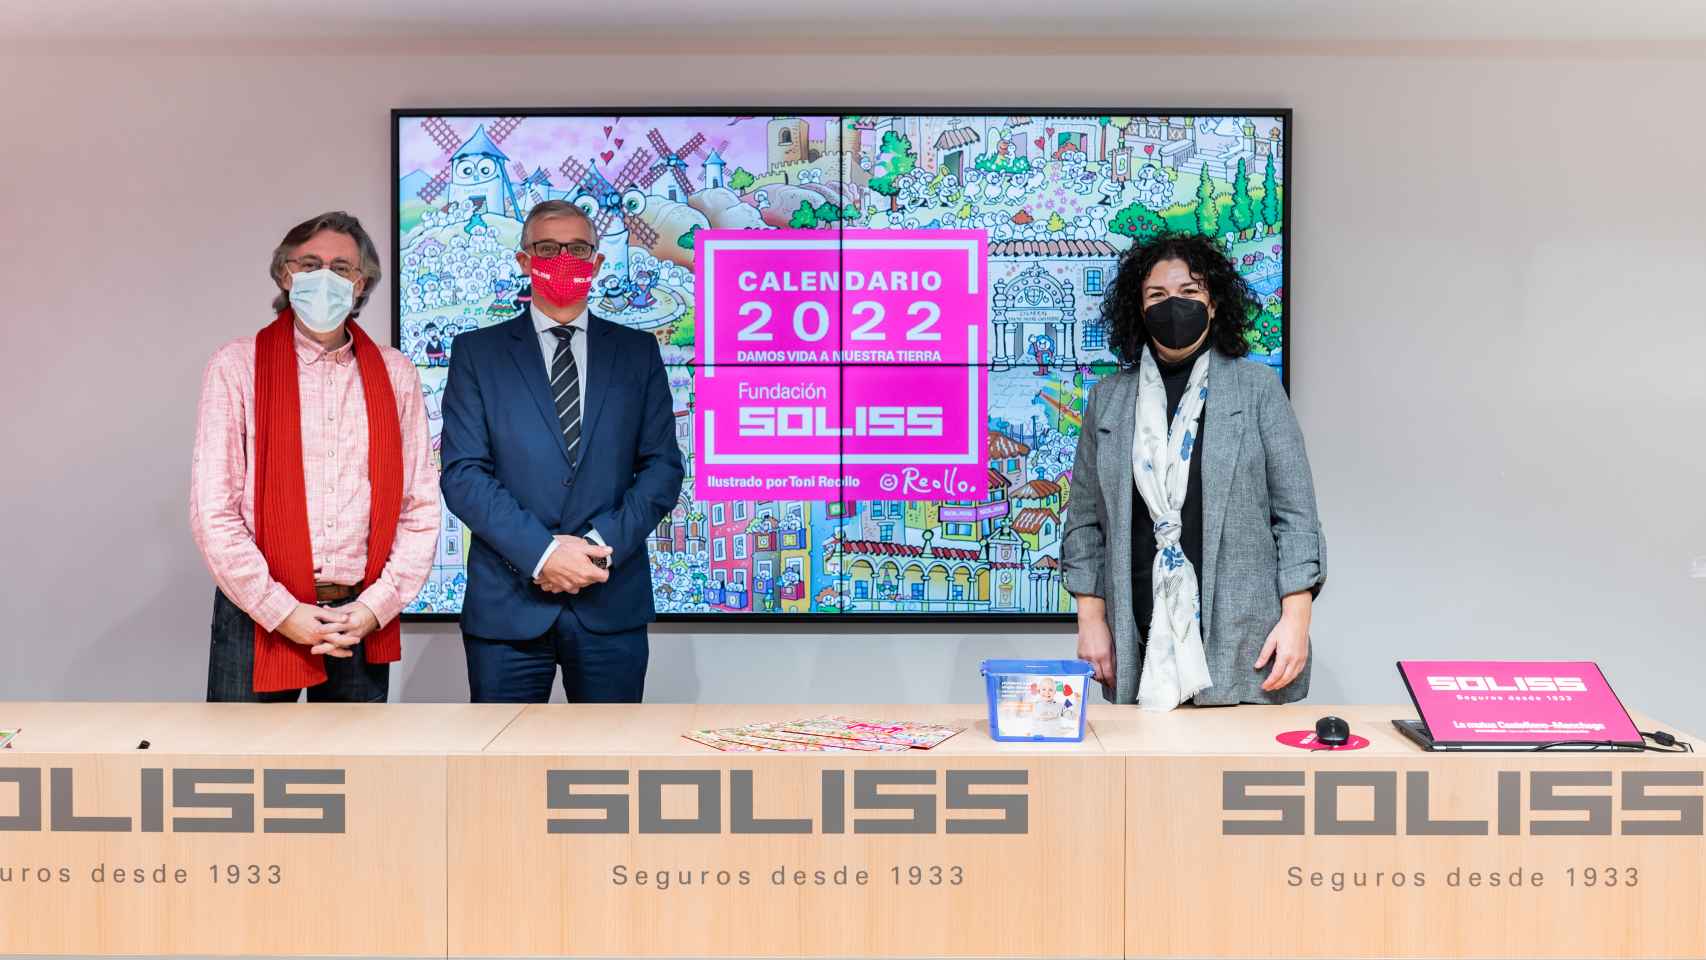 Soliss presenta en Toledo su calendario solidario 2022 con ilustraciones de Toni Reollo